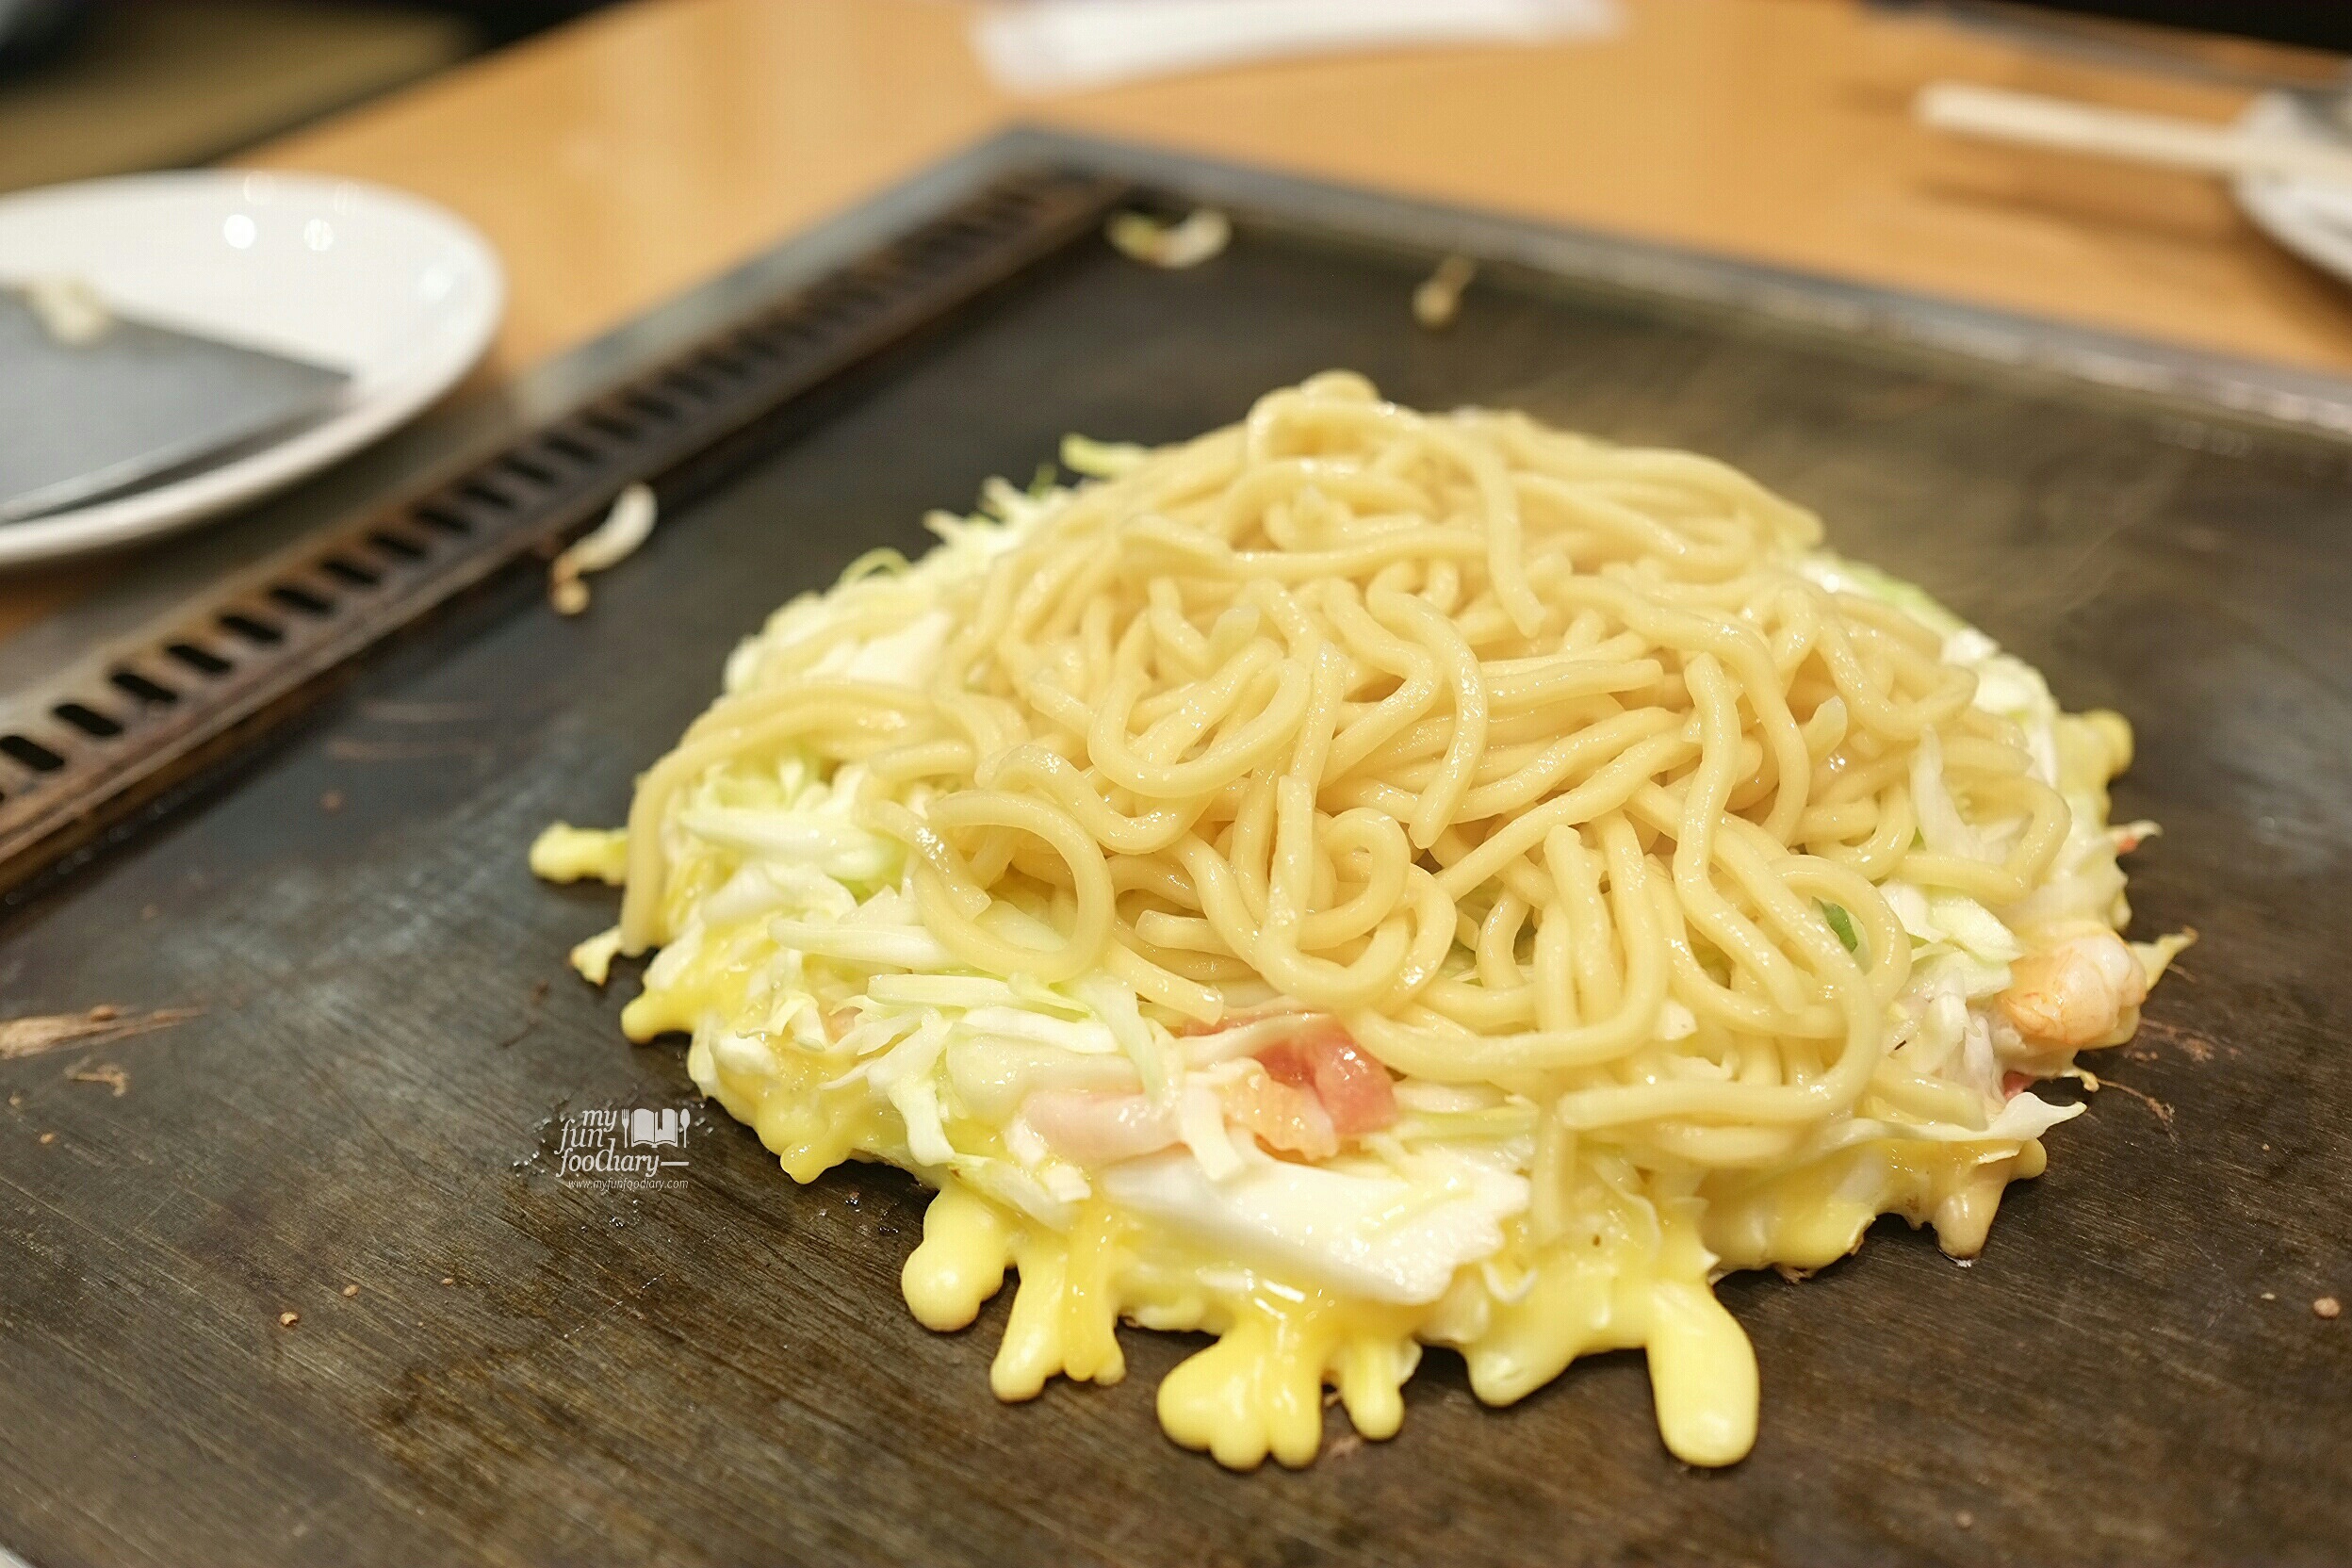 Second Step Noodles are put at Tsuruhashi Fugetsu Dotonbori Osaka by Myfunfoodiary